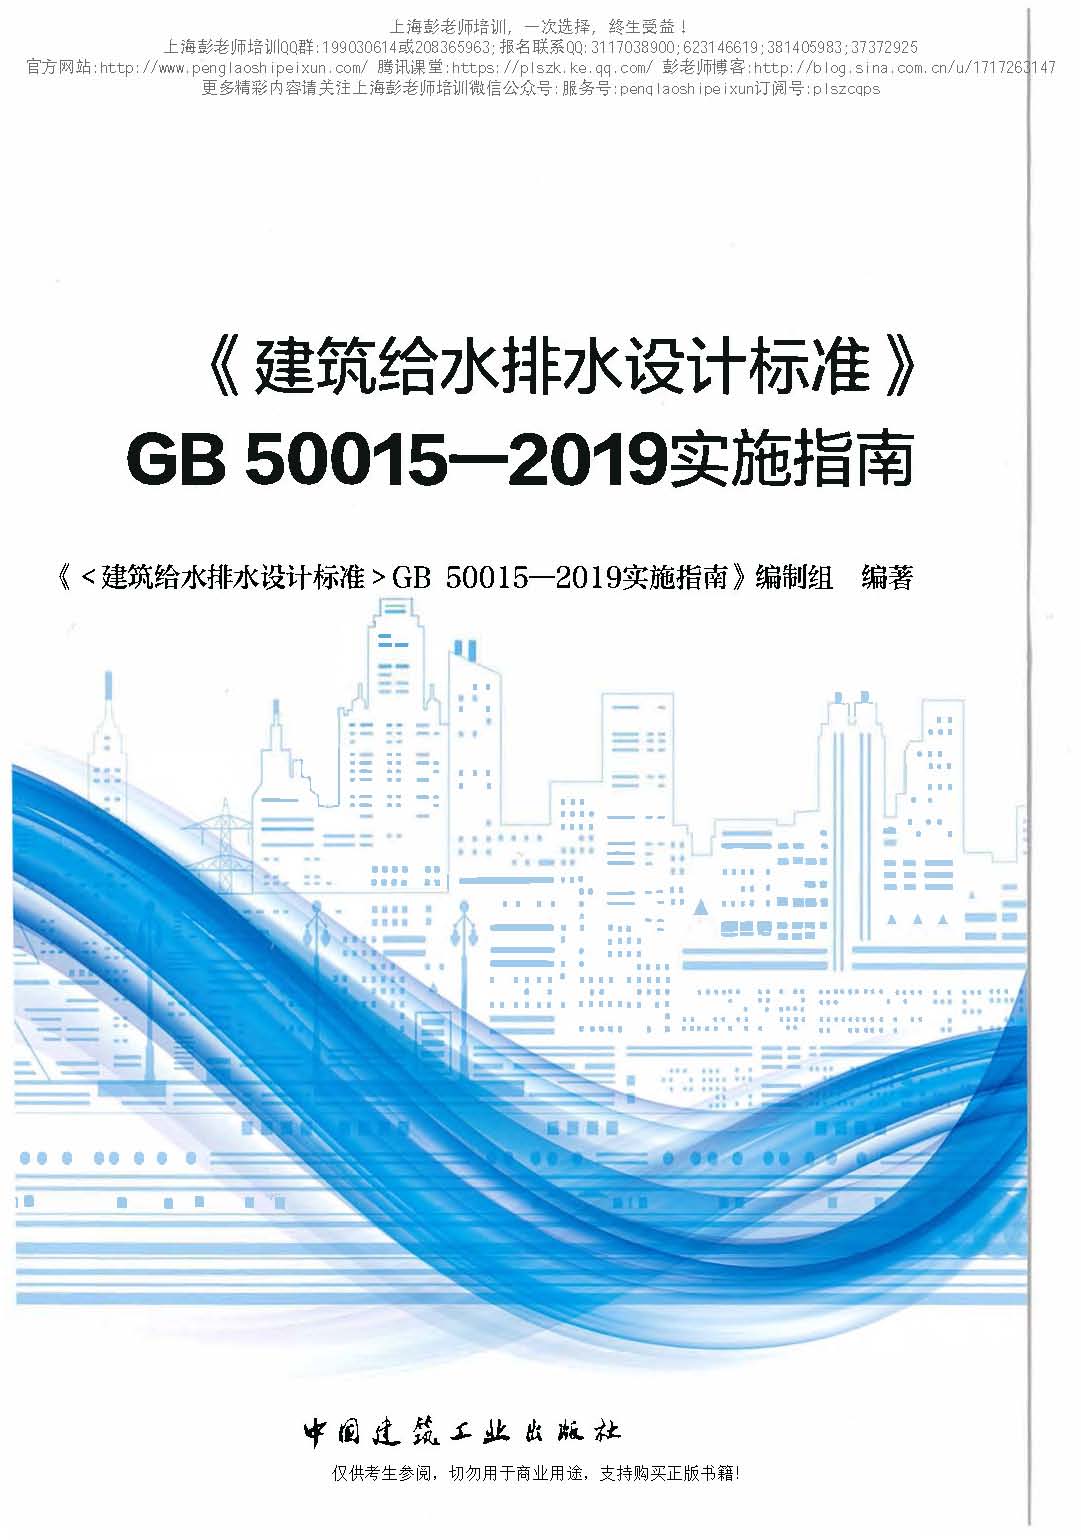 建筑给水排水设计标准GB50015-2019实施指南（OCR版）上海彭老师培训_页面_001.jpg